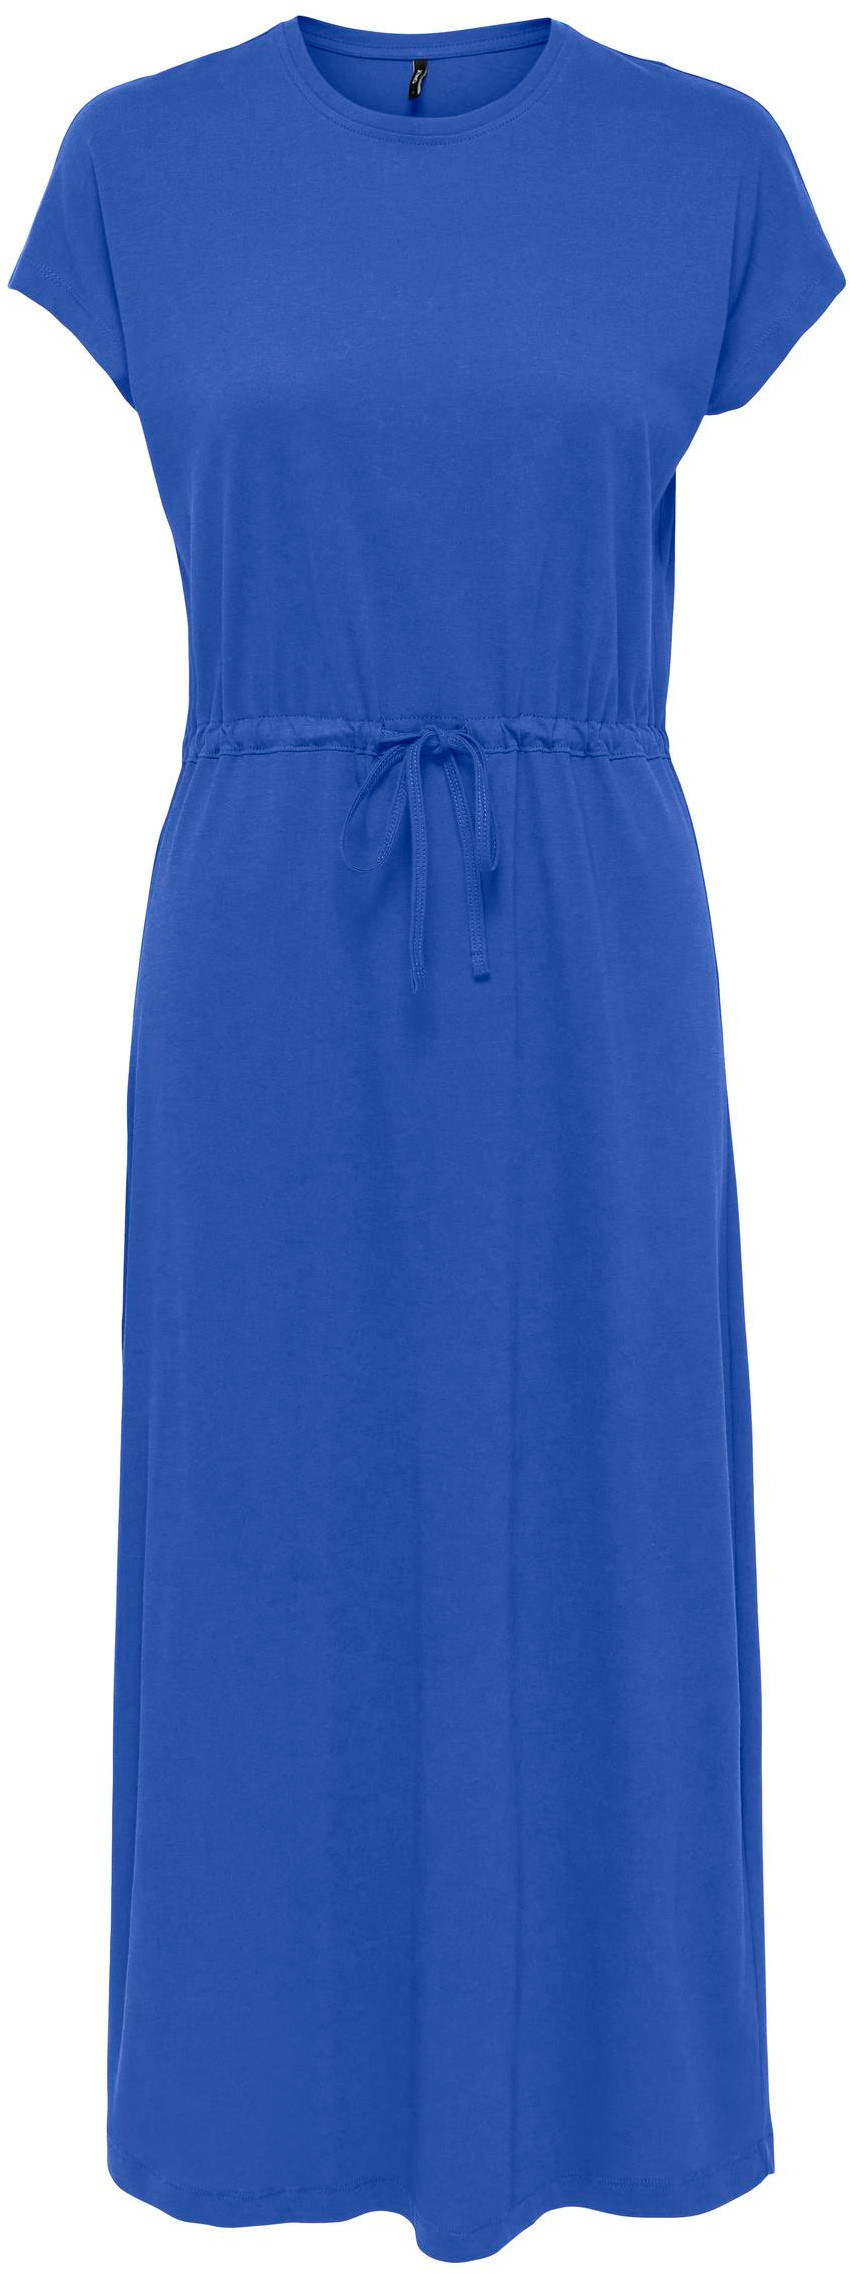 ONLY Dámske šaty ONLMAY Regular Fit 15257472 Dazzling Blue XS